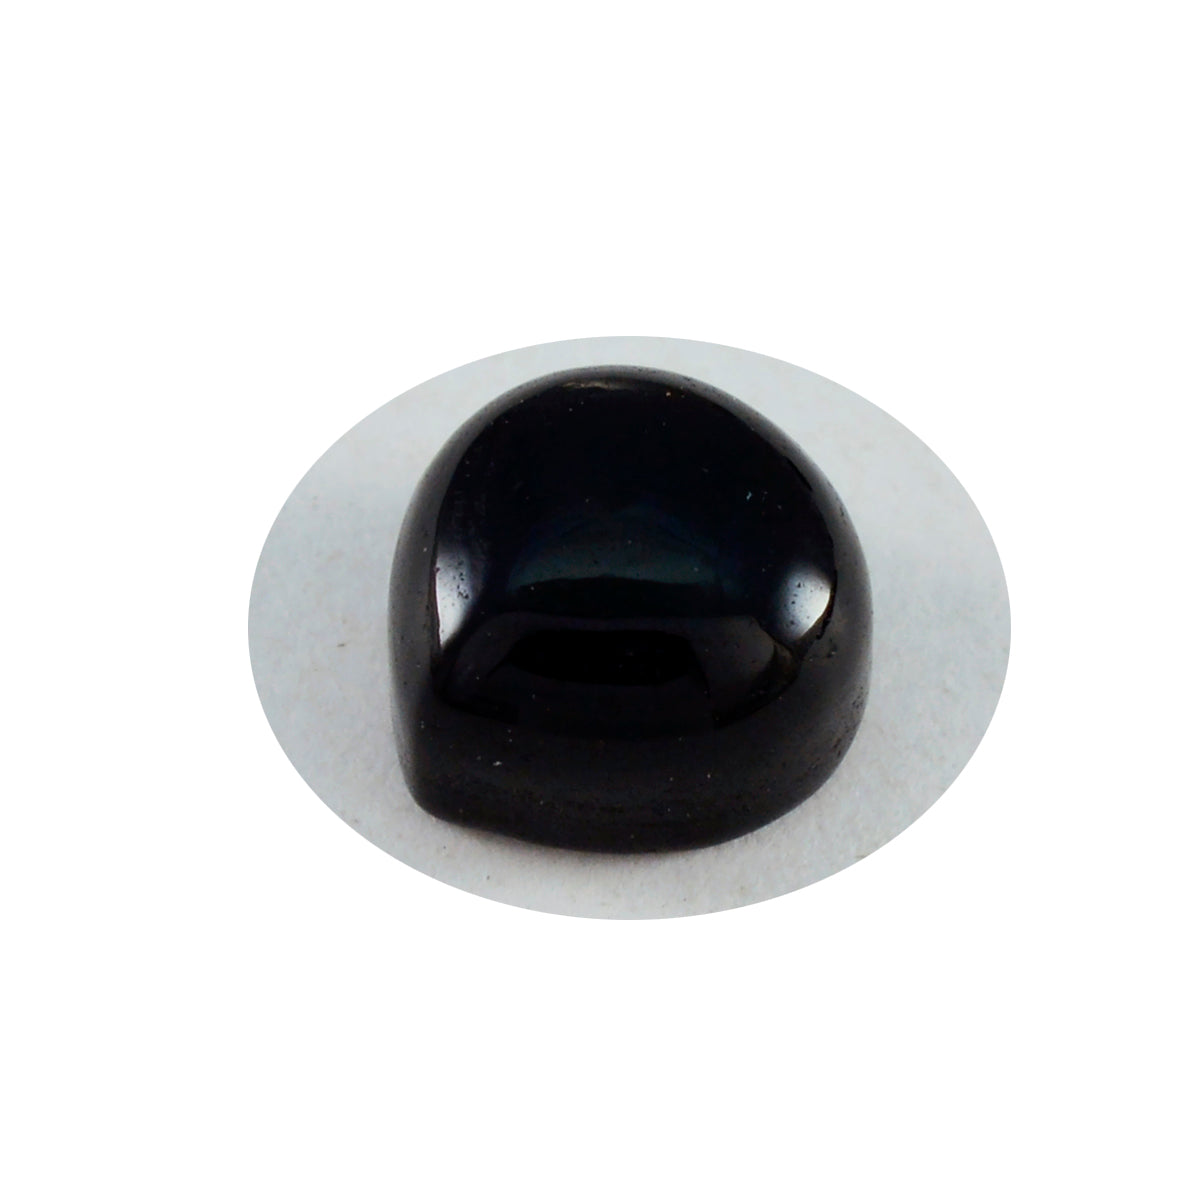 riyogems 1 шт. черный оникс кабошон 11x11 мм в форме сердца драгоценный камень удивительного качества